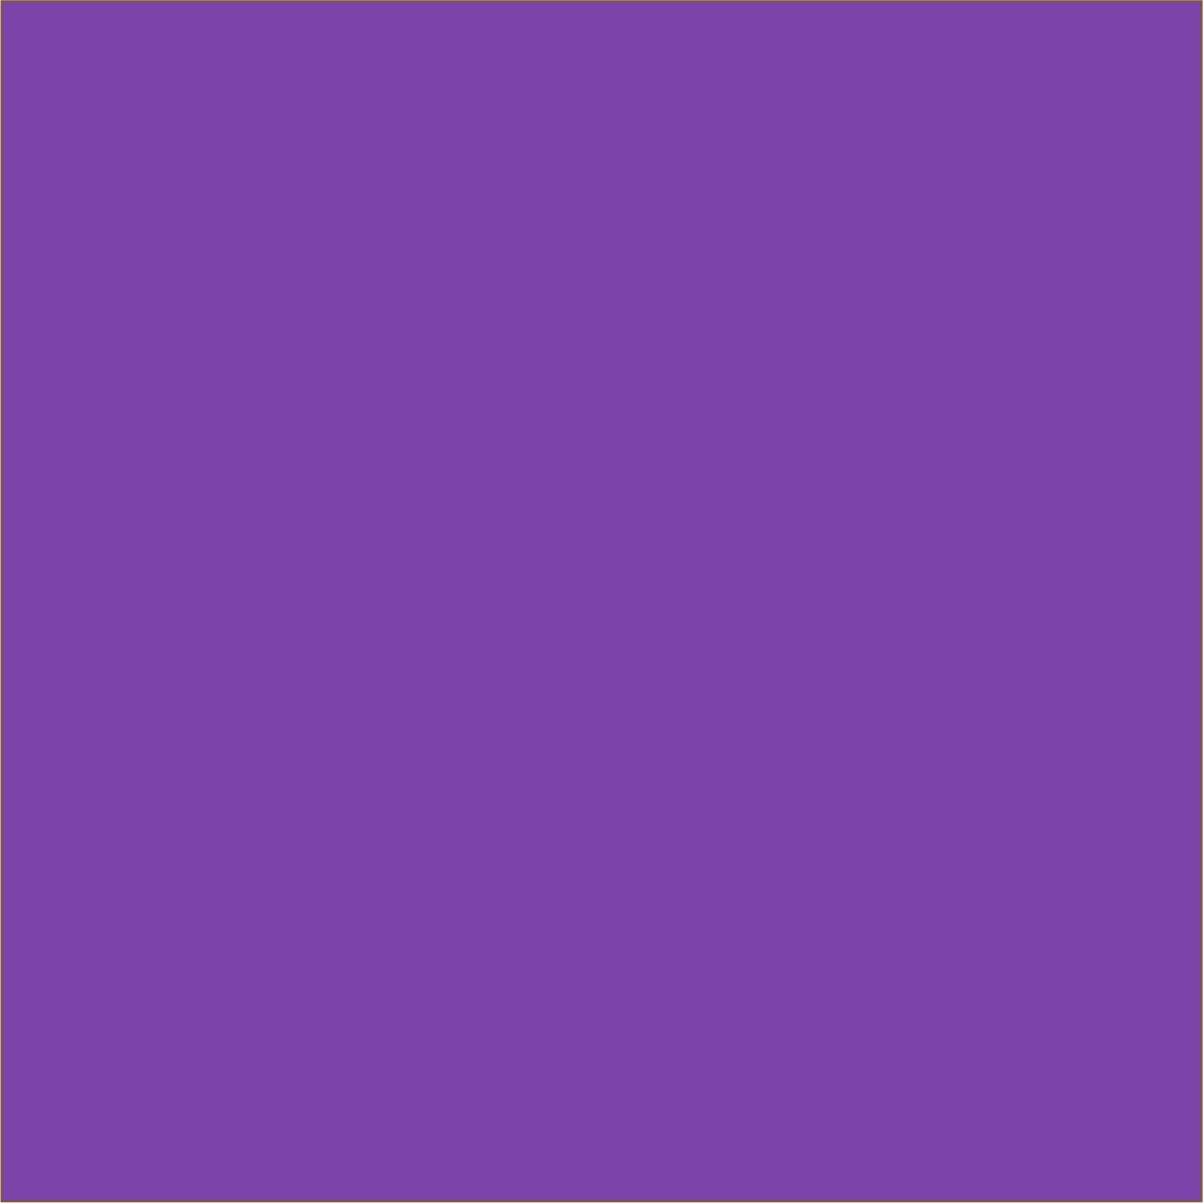 Wicked Purple HTV 12x15 sheet